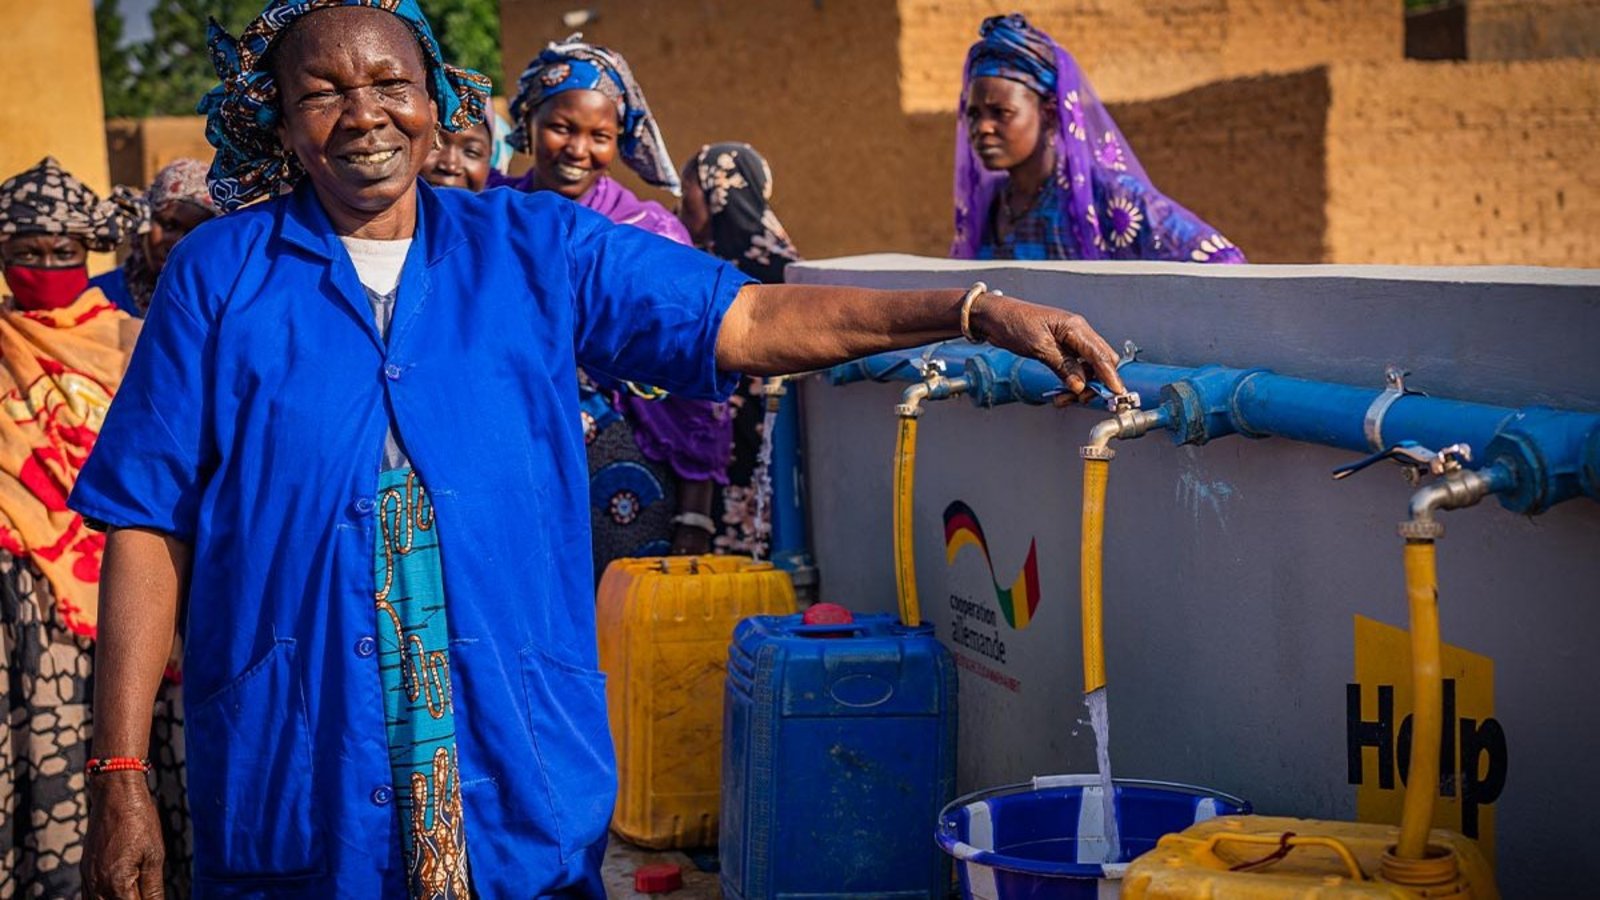 Eine Frau in einem blauen Kleid steht vor einem Help-Brunnen und zapft Wasser ab